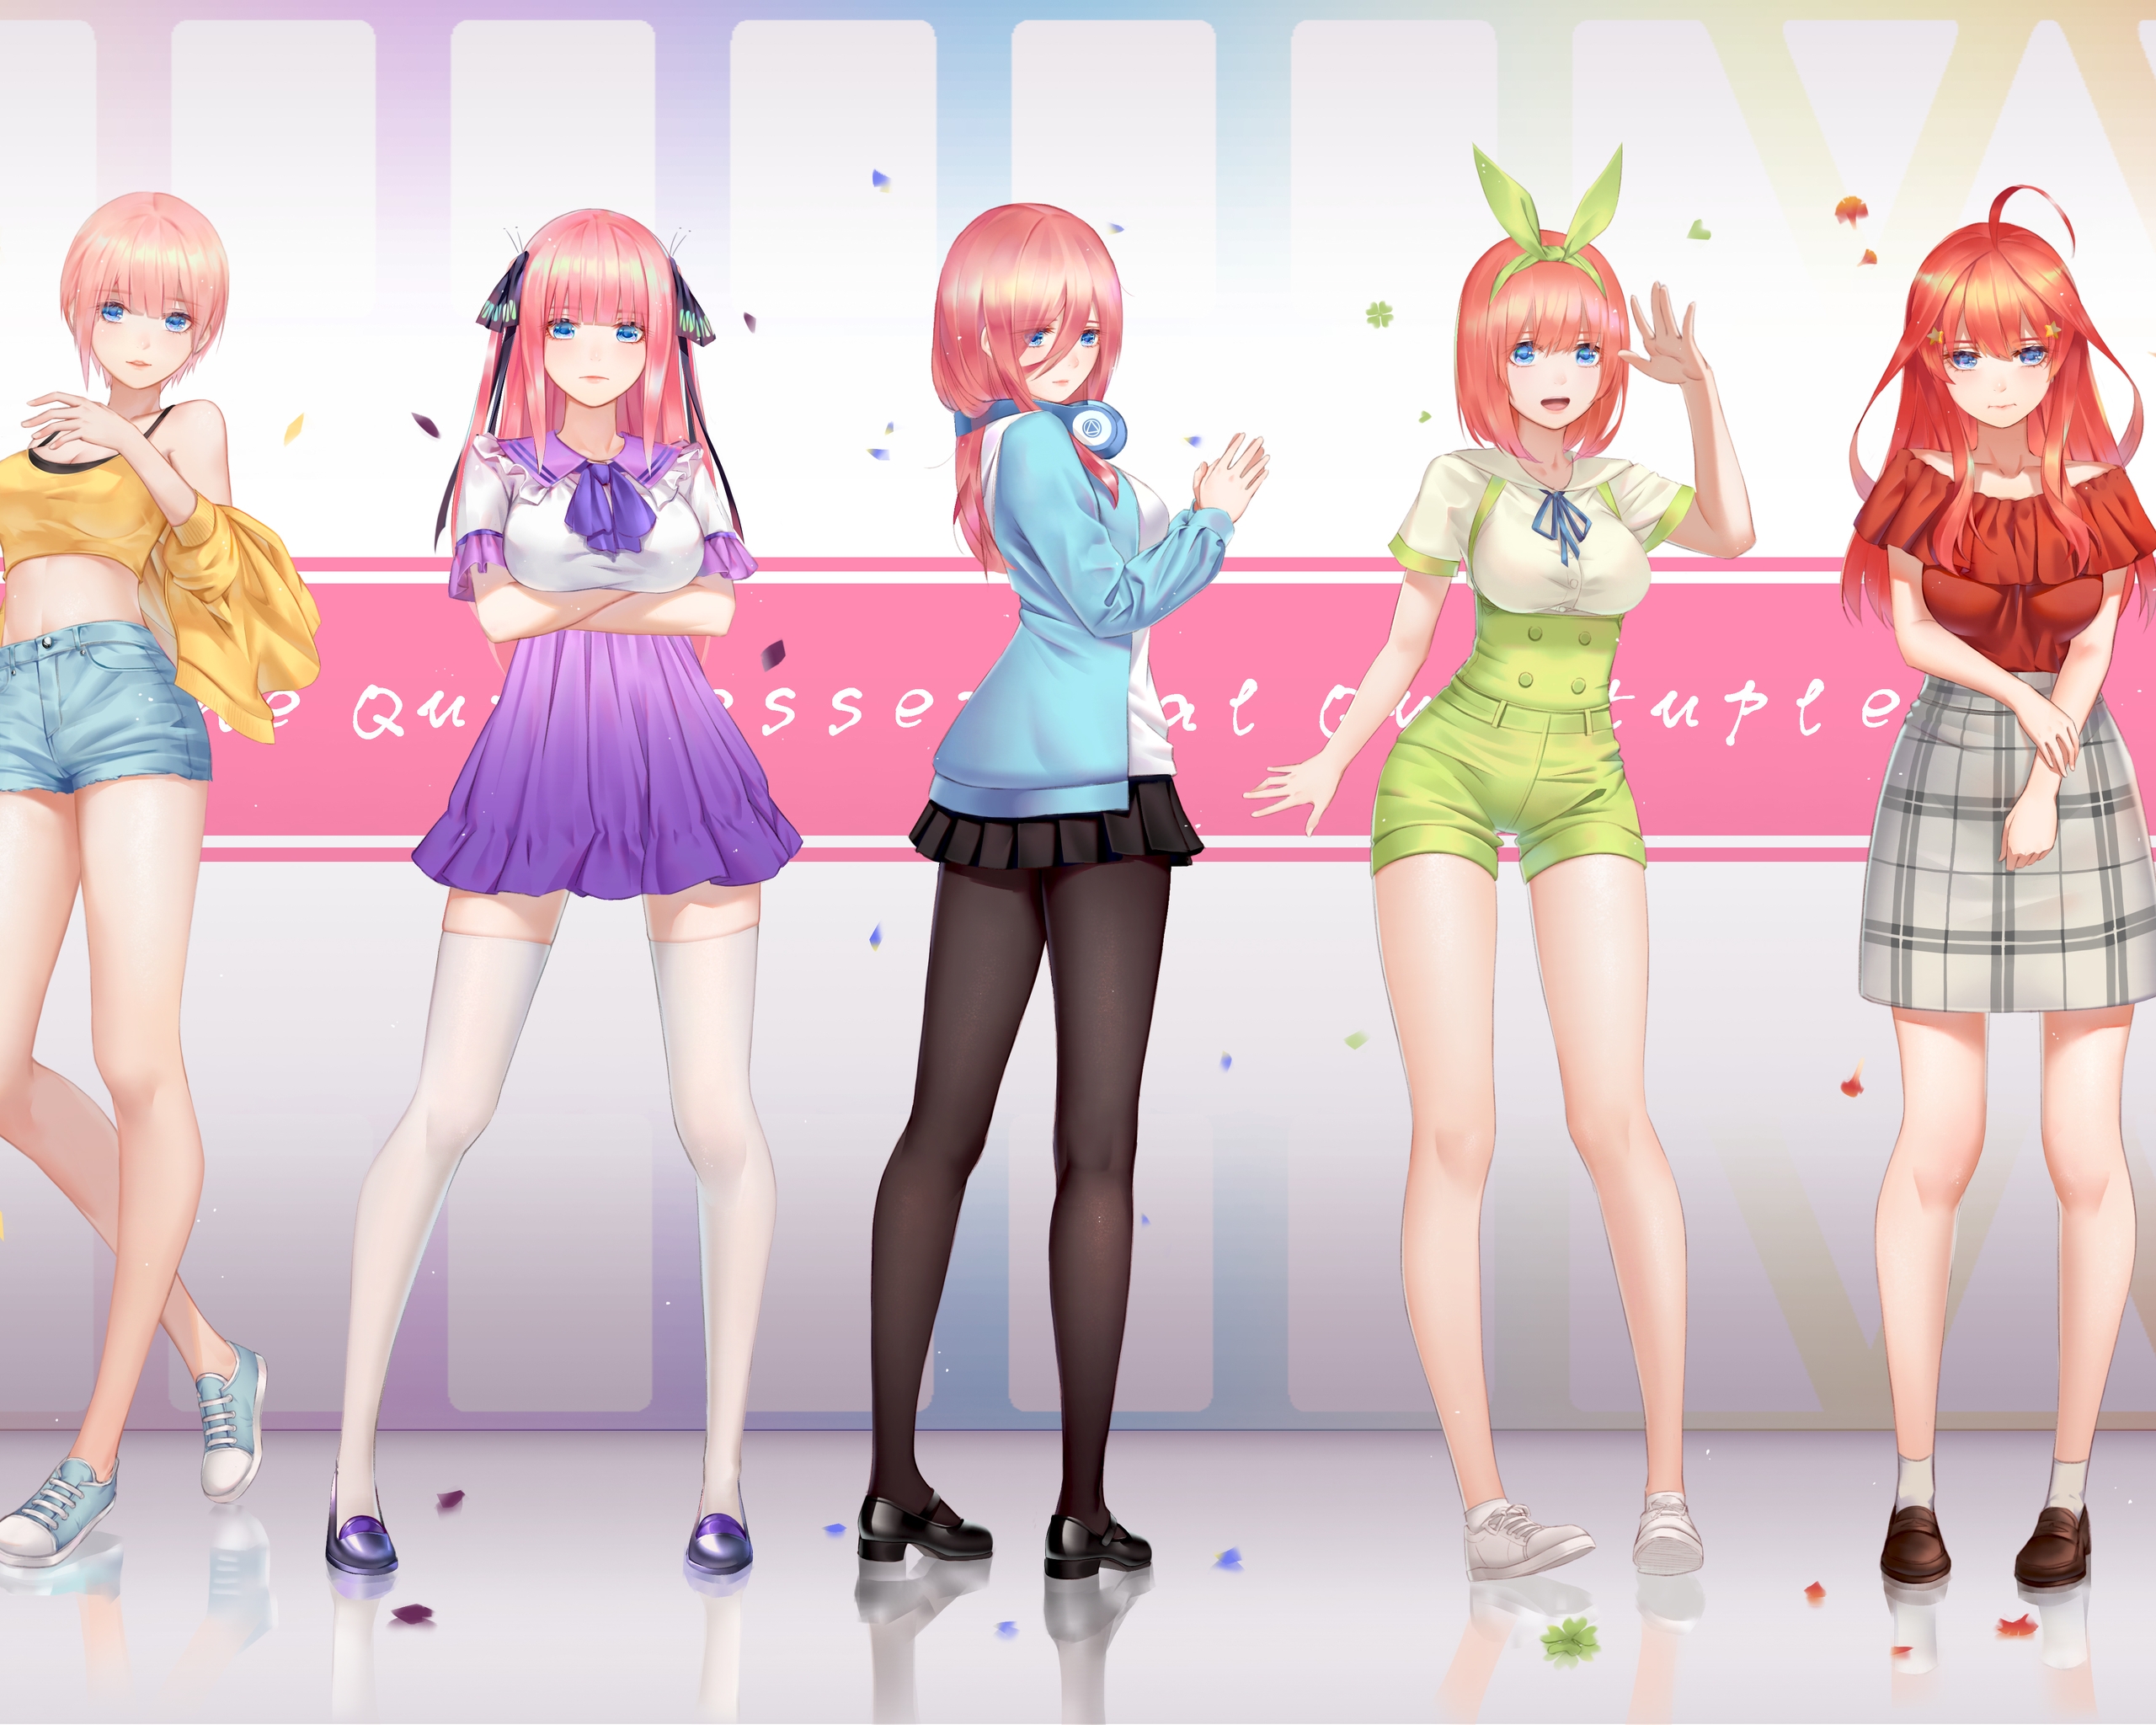 Image: Girls, anime, Five brides, Go-Toubun no Hanayome, Nakano Ichika, Nakano Nino, Nakano Miku, Nakano Yotsuba, Nakano Itsuki